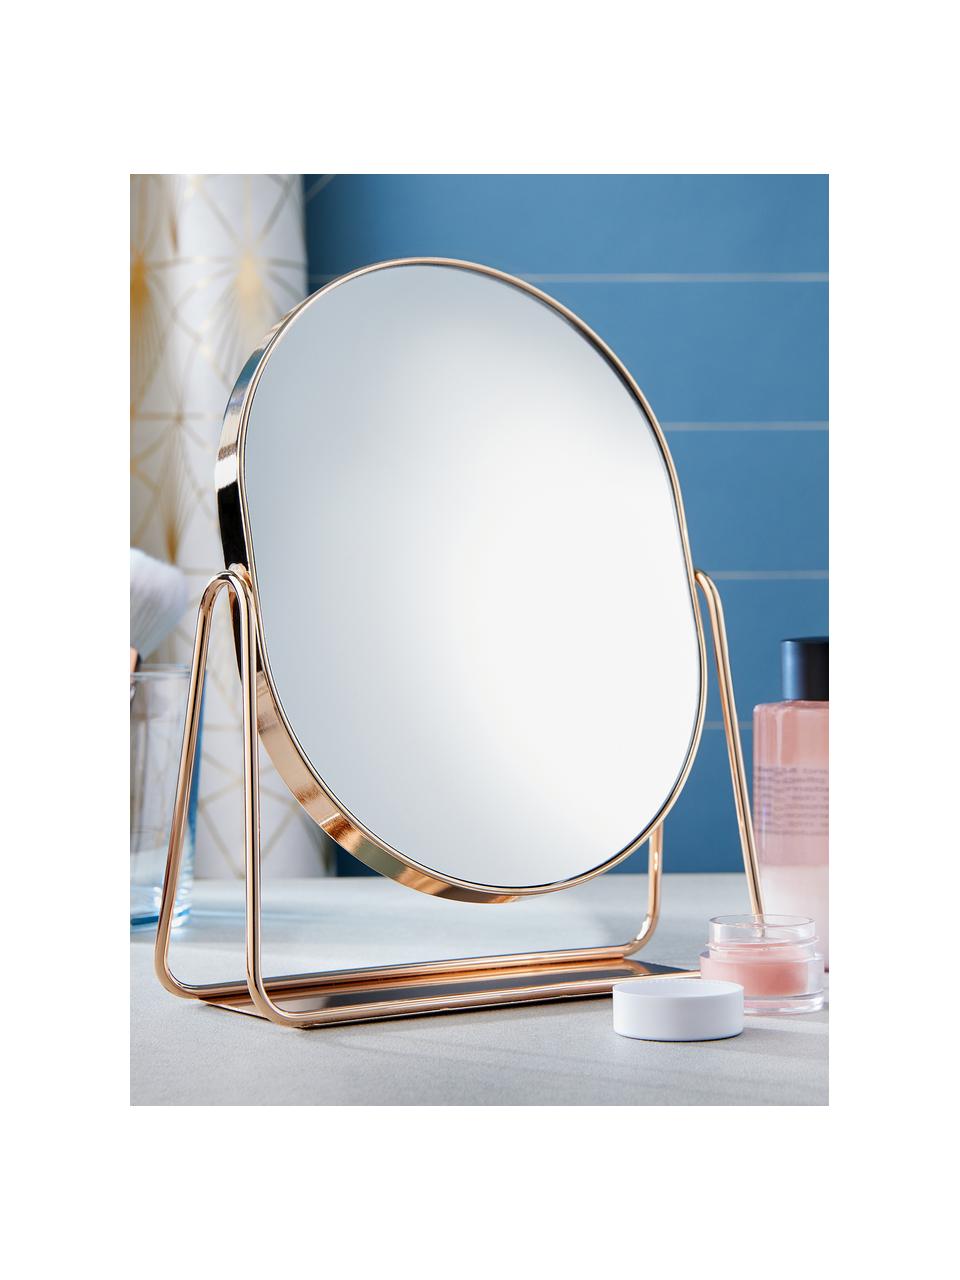 Ovaler Kosmetikspiegel Gloria mit rosegoldenem Metallgestell, Gestell: Metall, beschichtet, Spiegelfläche: Glas, Rosegoldfarben, B 16 x H 22 cm